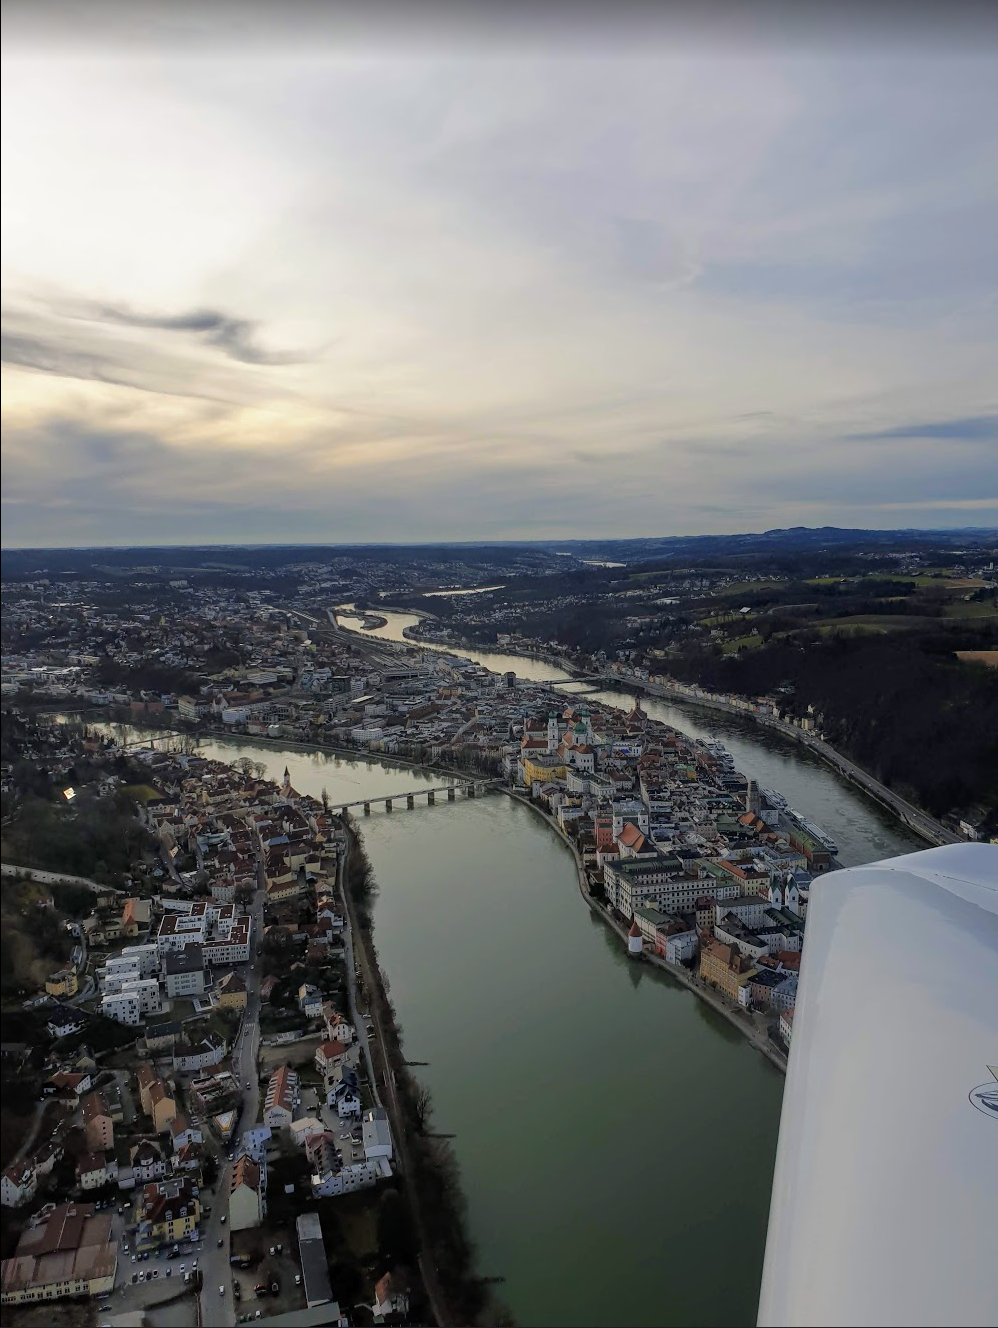 Passau von oben